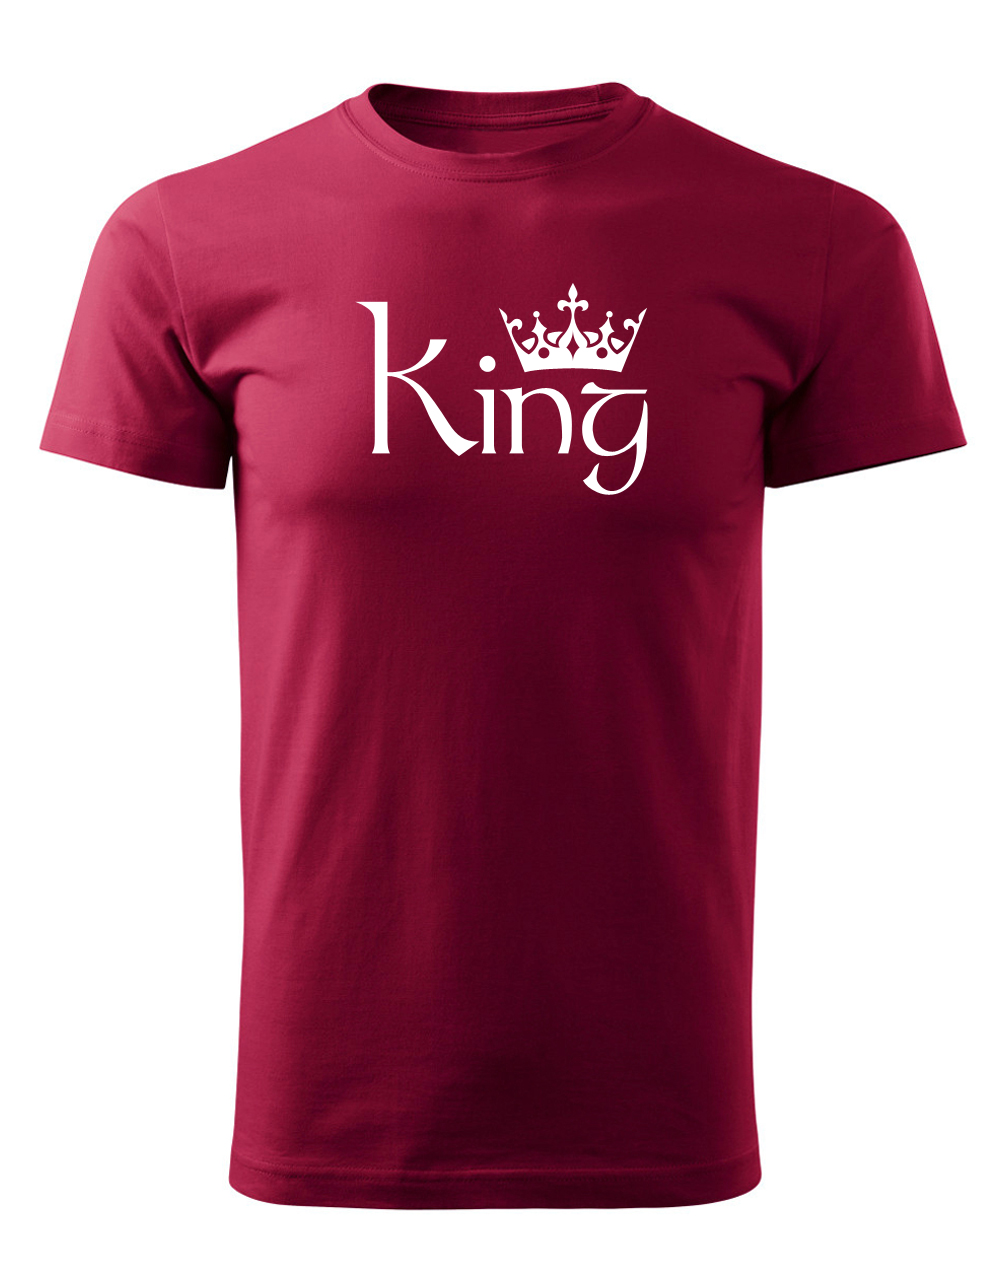 Pásnké tričko s potiskem King granátová